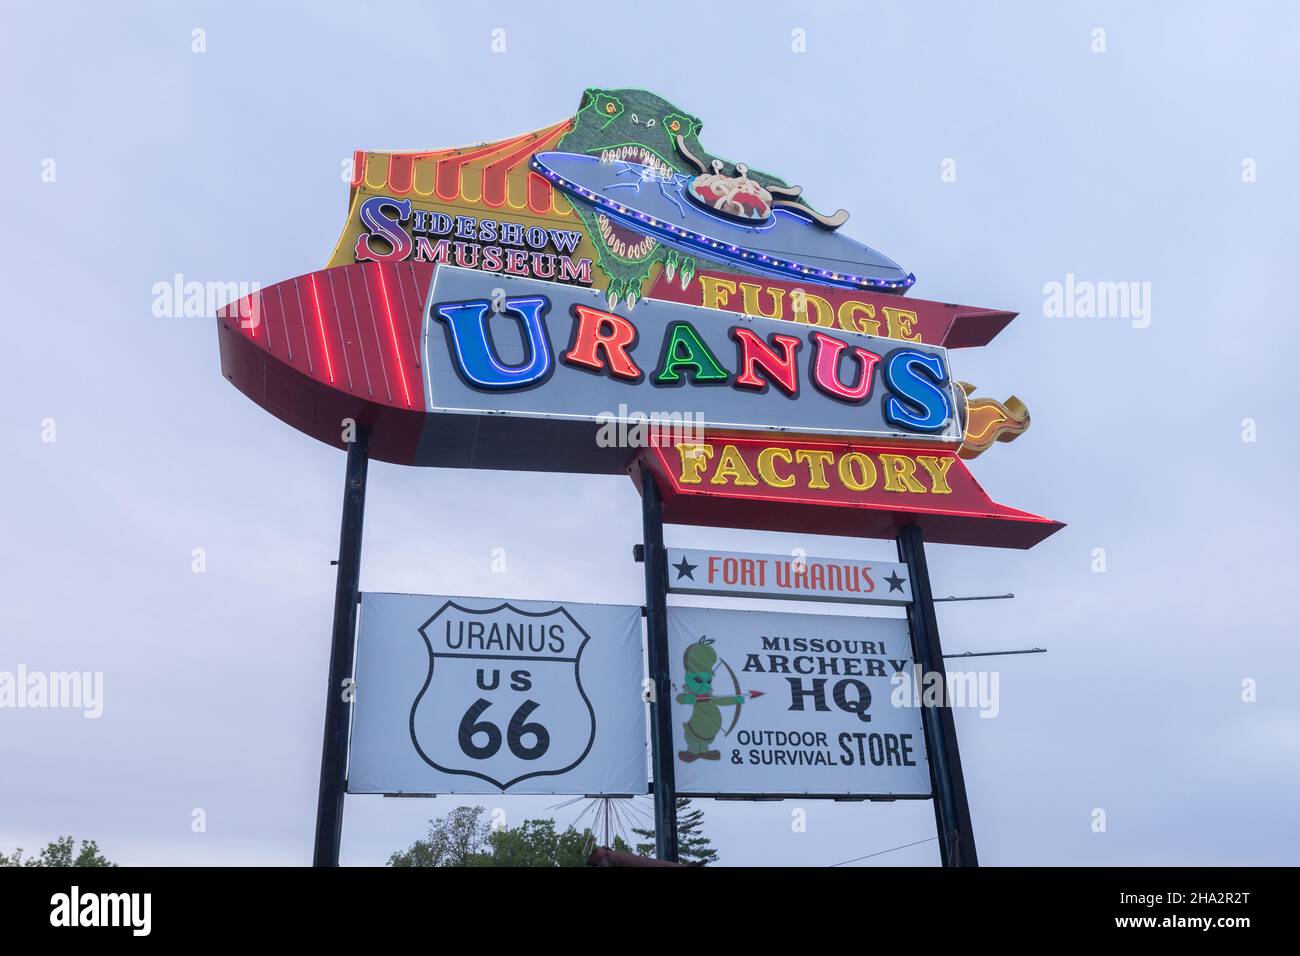 St Robert, Missouri, Missouri, Etats-Unis sur la route 66, panneau au néon de l'usine Uranus Fudge et du magasin général. Banque D'Images